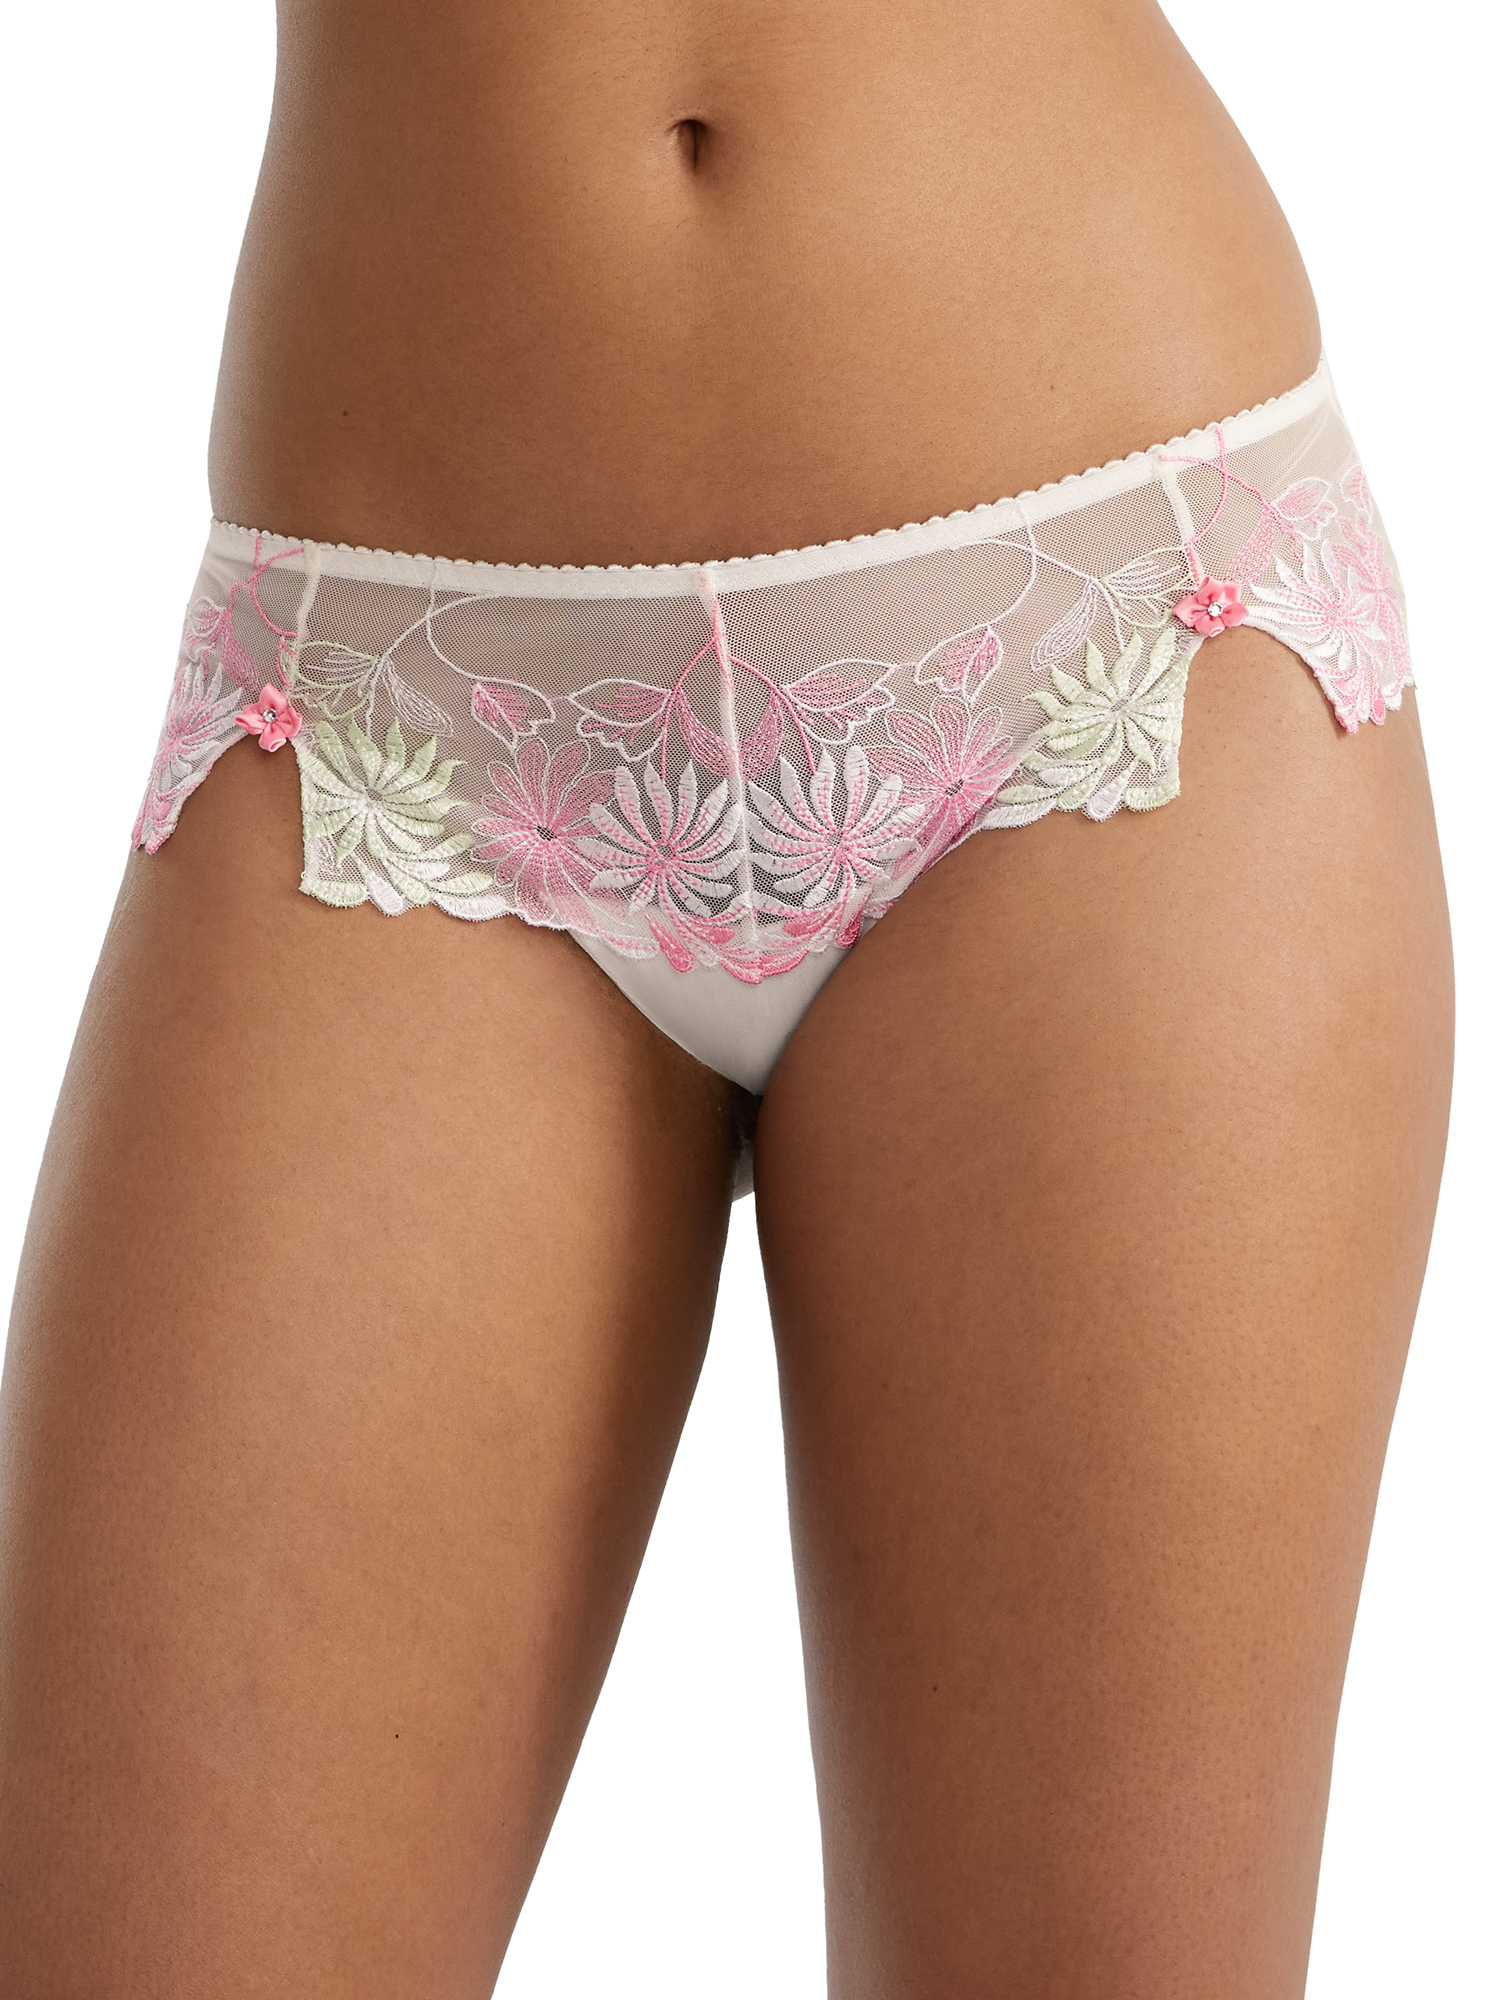 Women's Pour Moi 7703 St. Tropez Shorty Panty (White/Pink/Green XL) - image 1 of 2